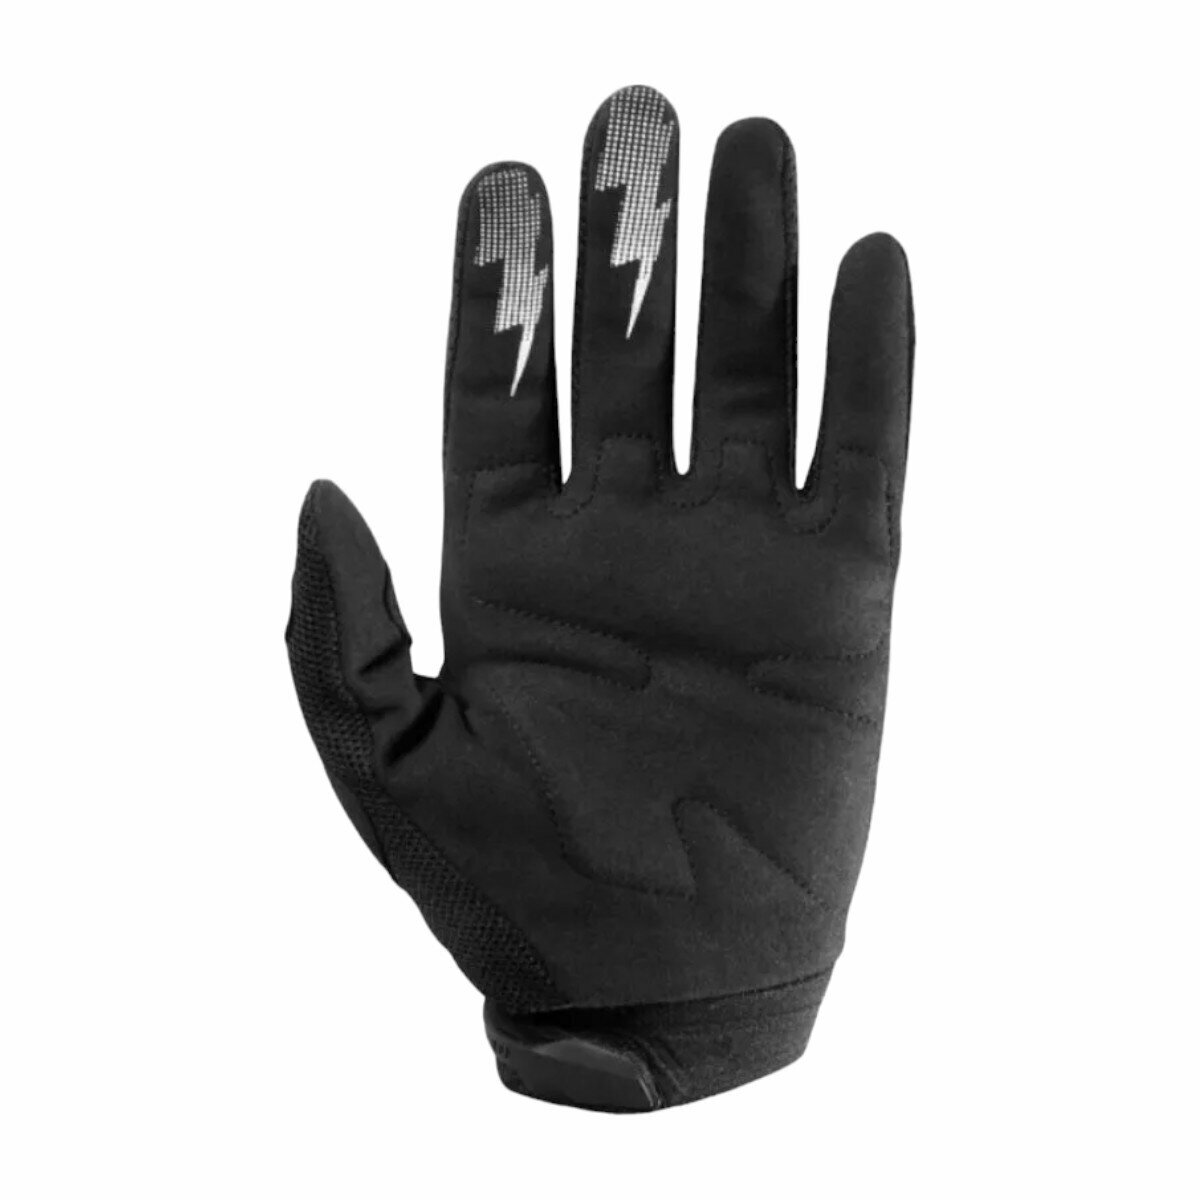 Мотоперчатки перчатки текстильные FOX NFG-11 спортивные для мотокросса кросса мотоциклиста на кроссовый мотоцикл питбайк эндуро, черные, L